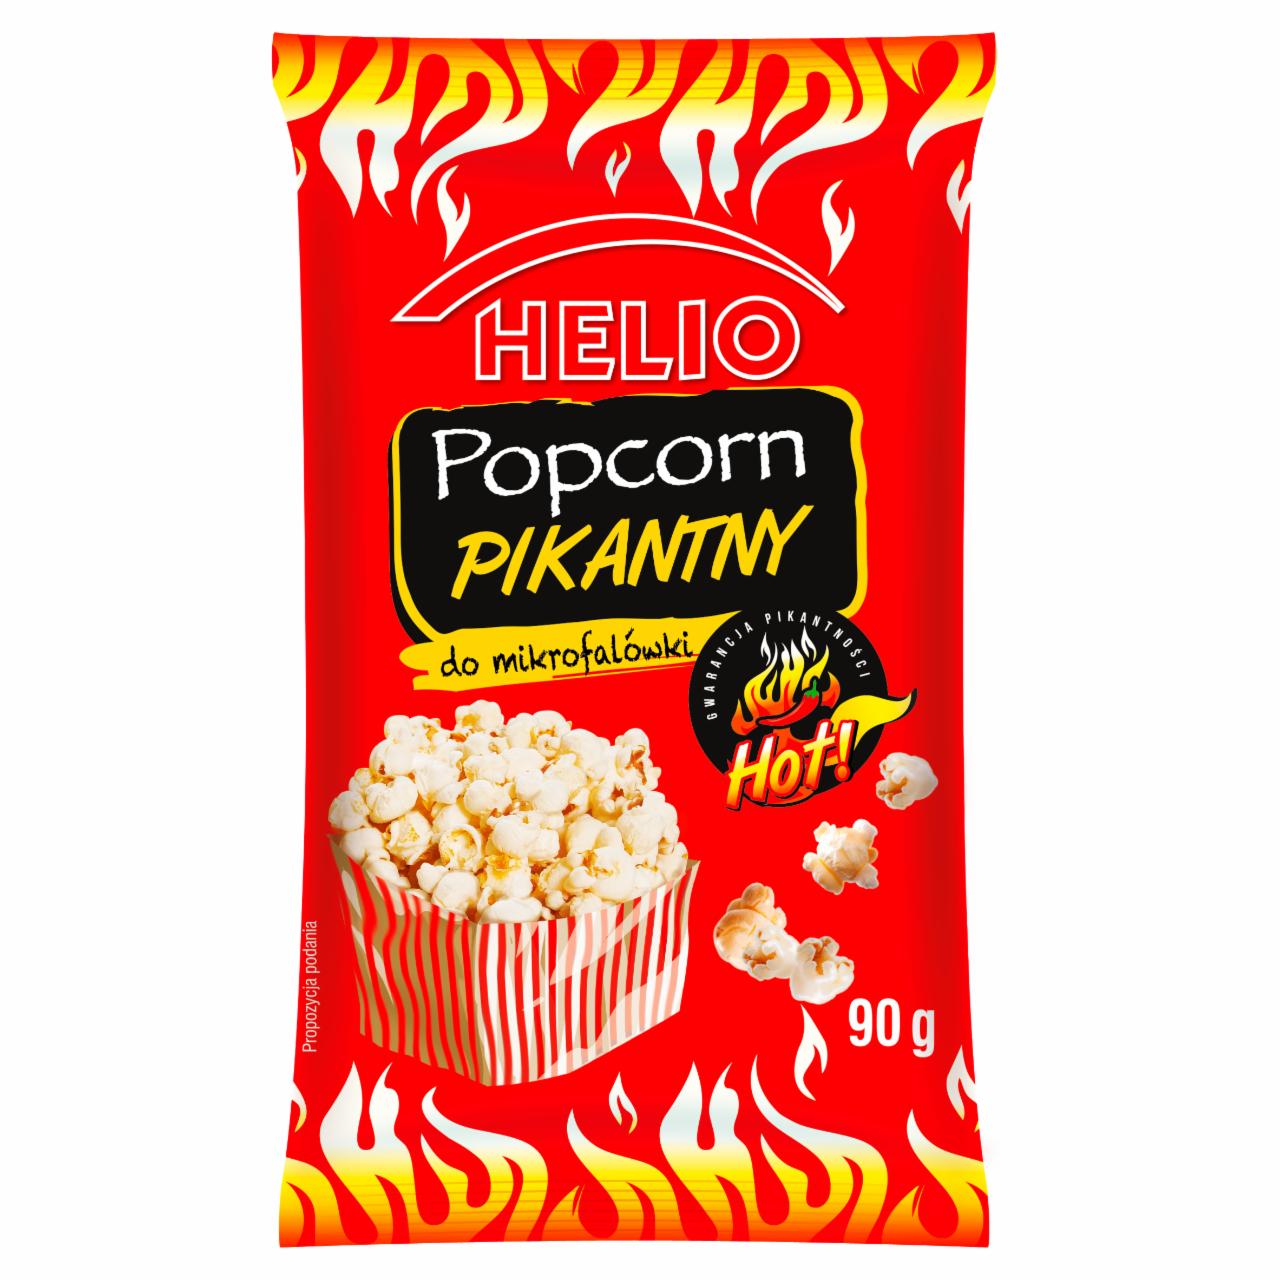 Zdjęcia - Helio Popcorn pikantny do mikrofalówki